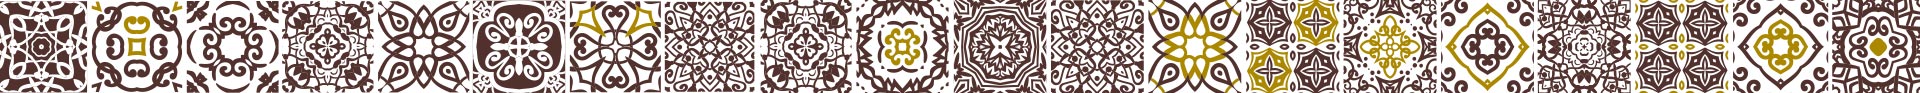 Gráfico decoración con azulejos marrones para Toritos de chocolate de Dulces El Toro